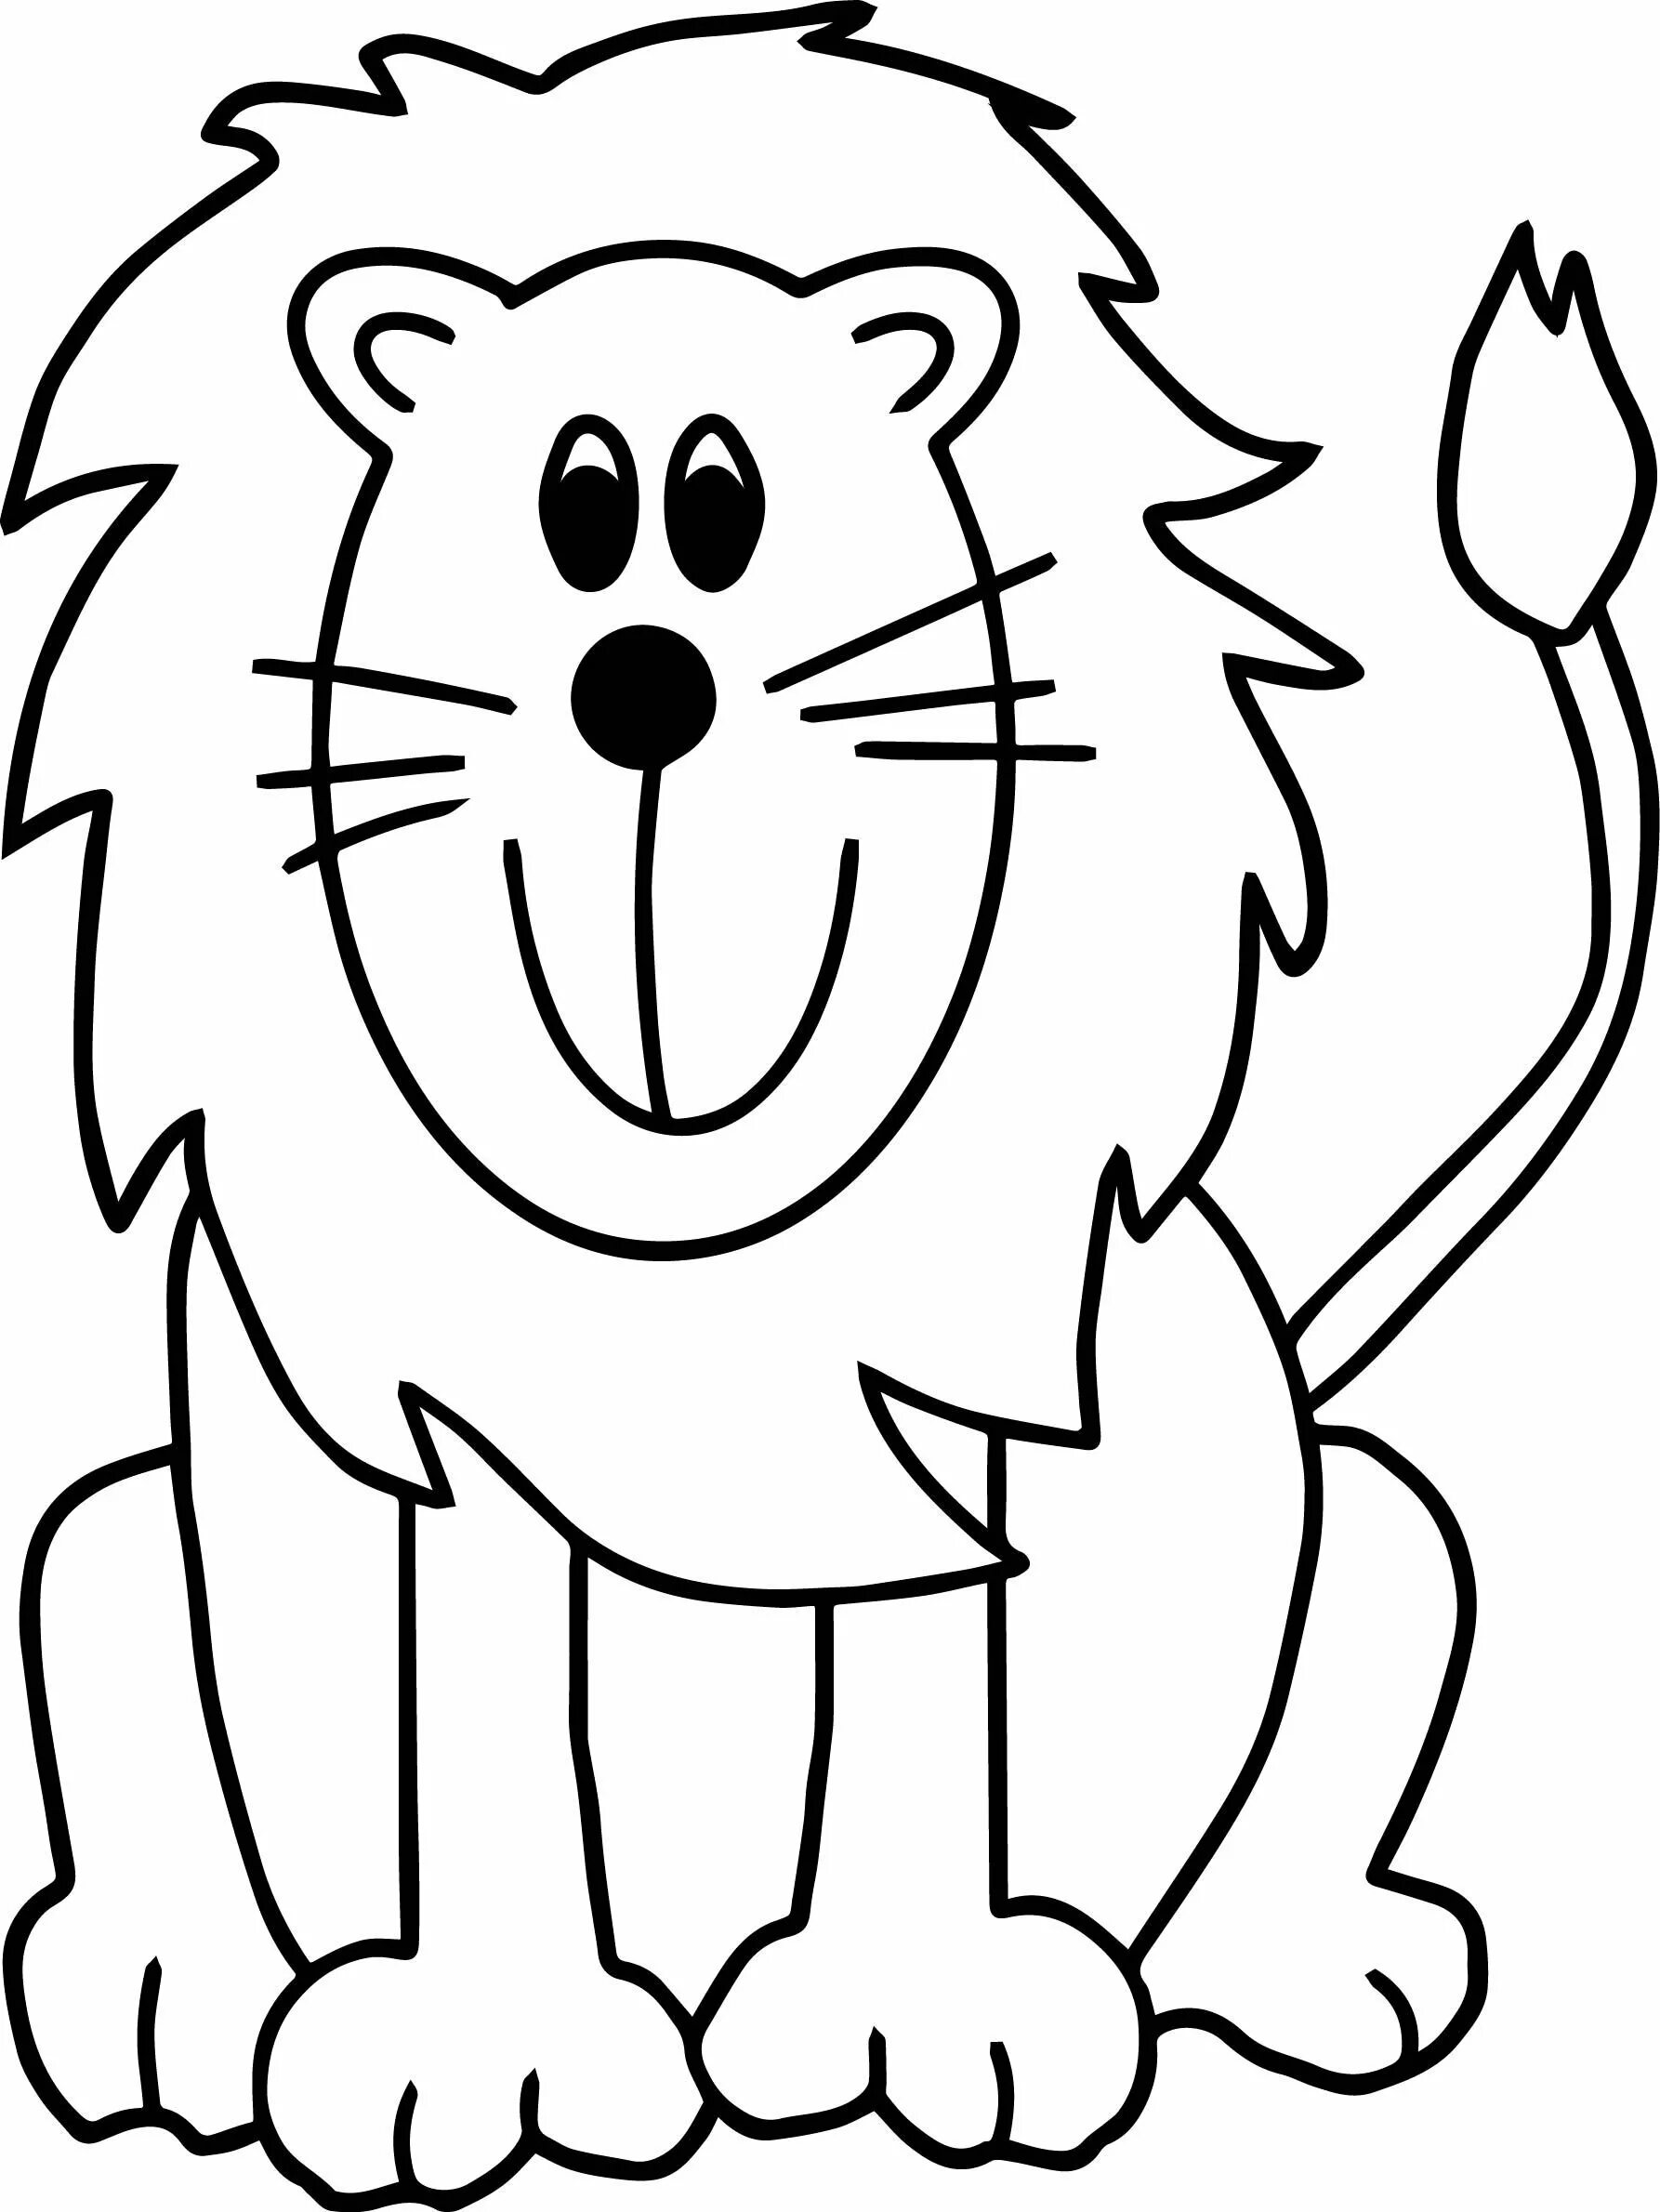 Dynamic lion pattern for kids